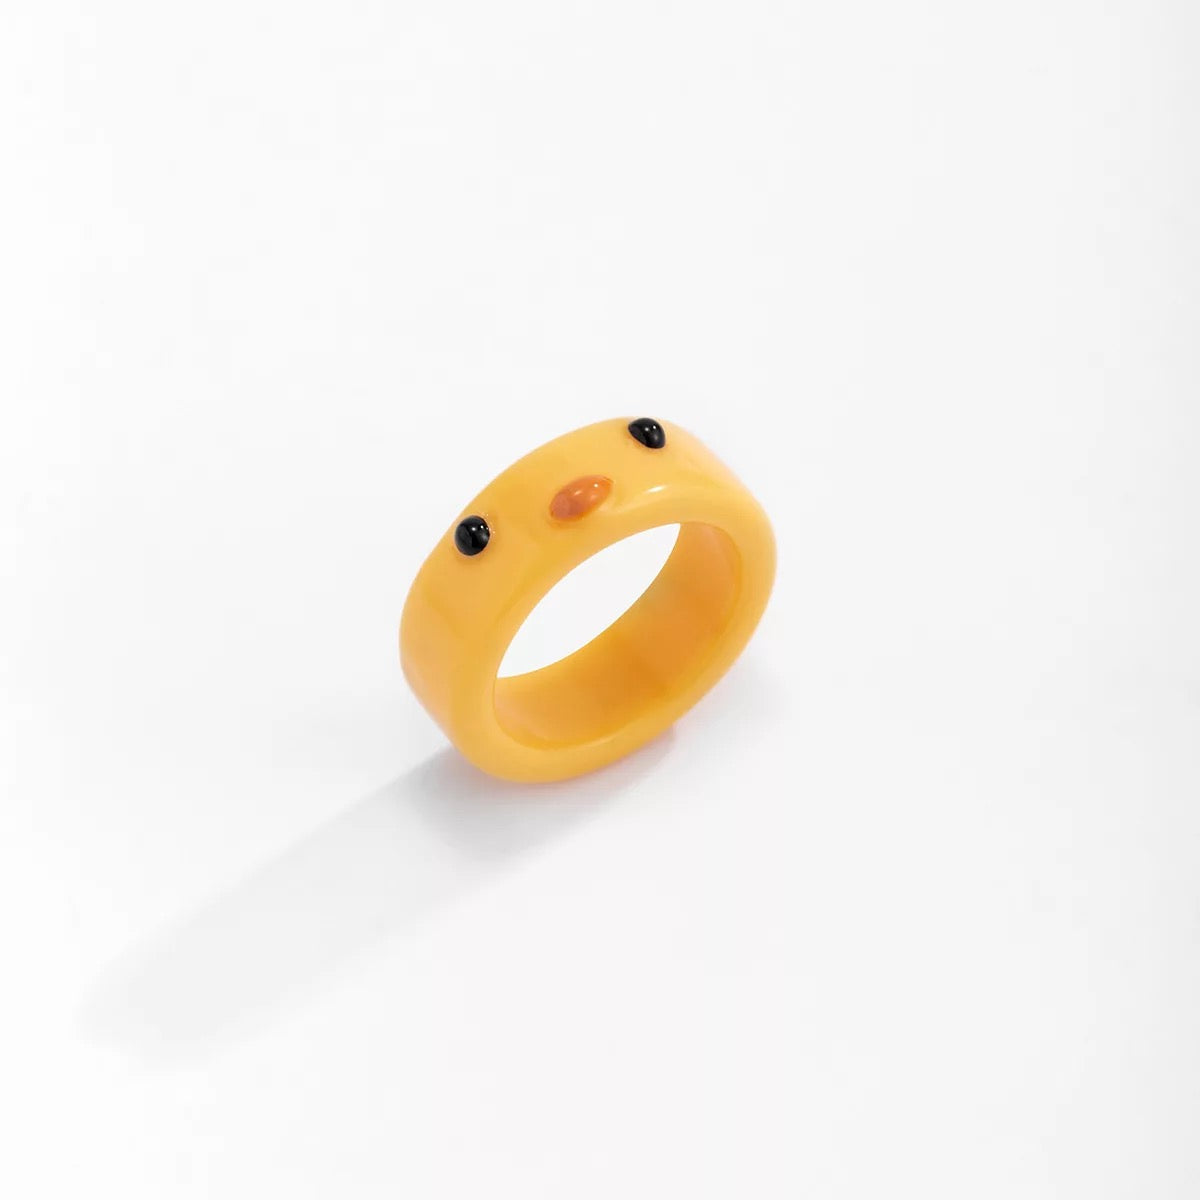 Yellow Duck Ring